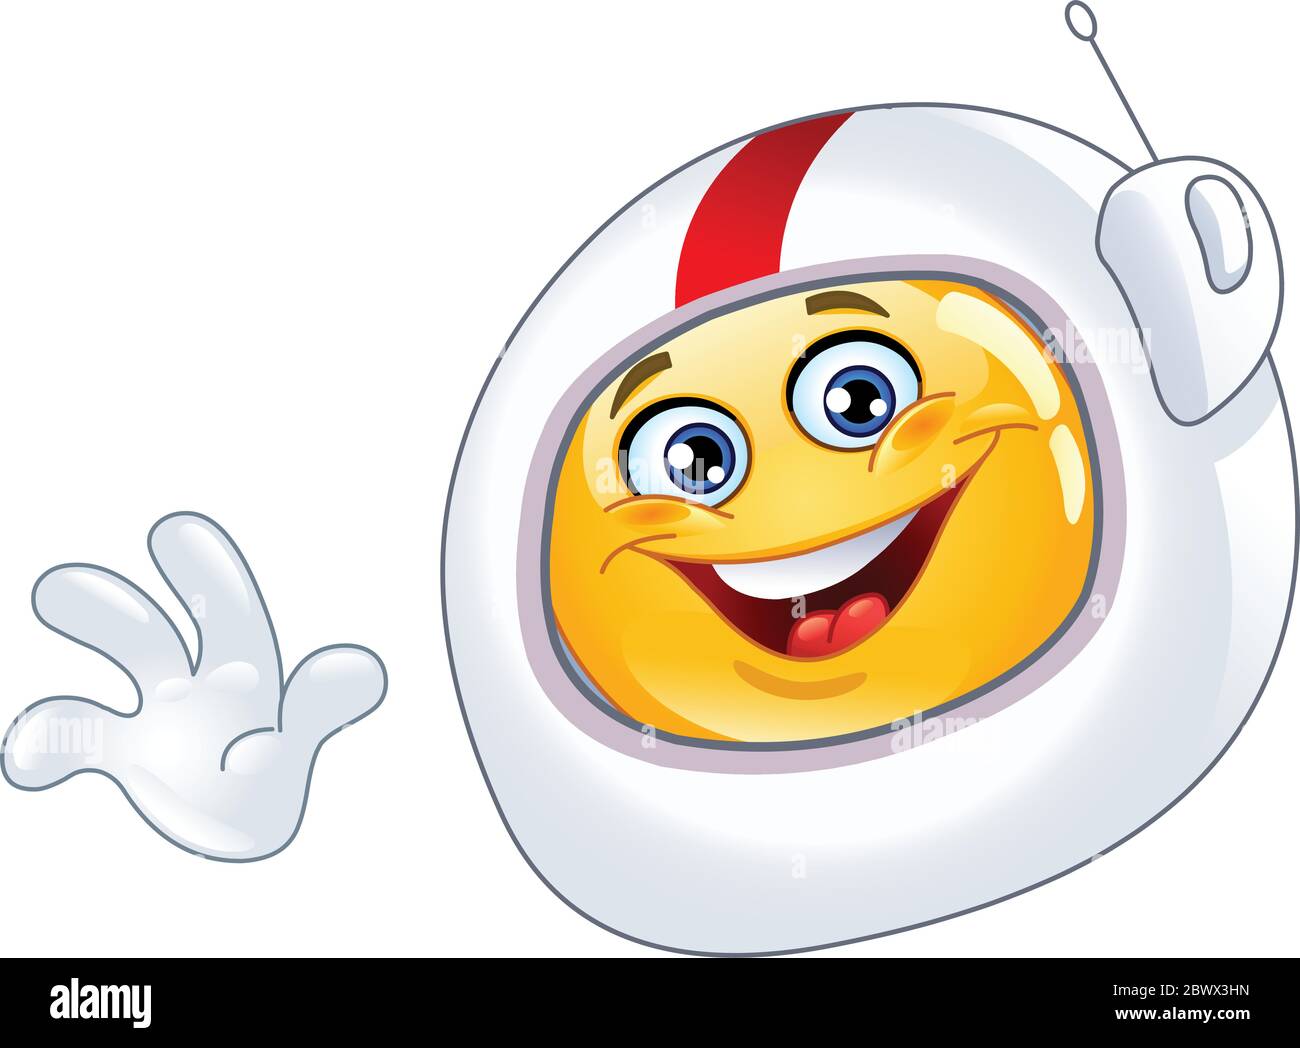 Astronaut emoticon Stock Vector